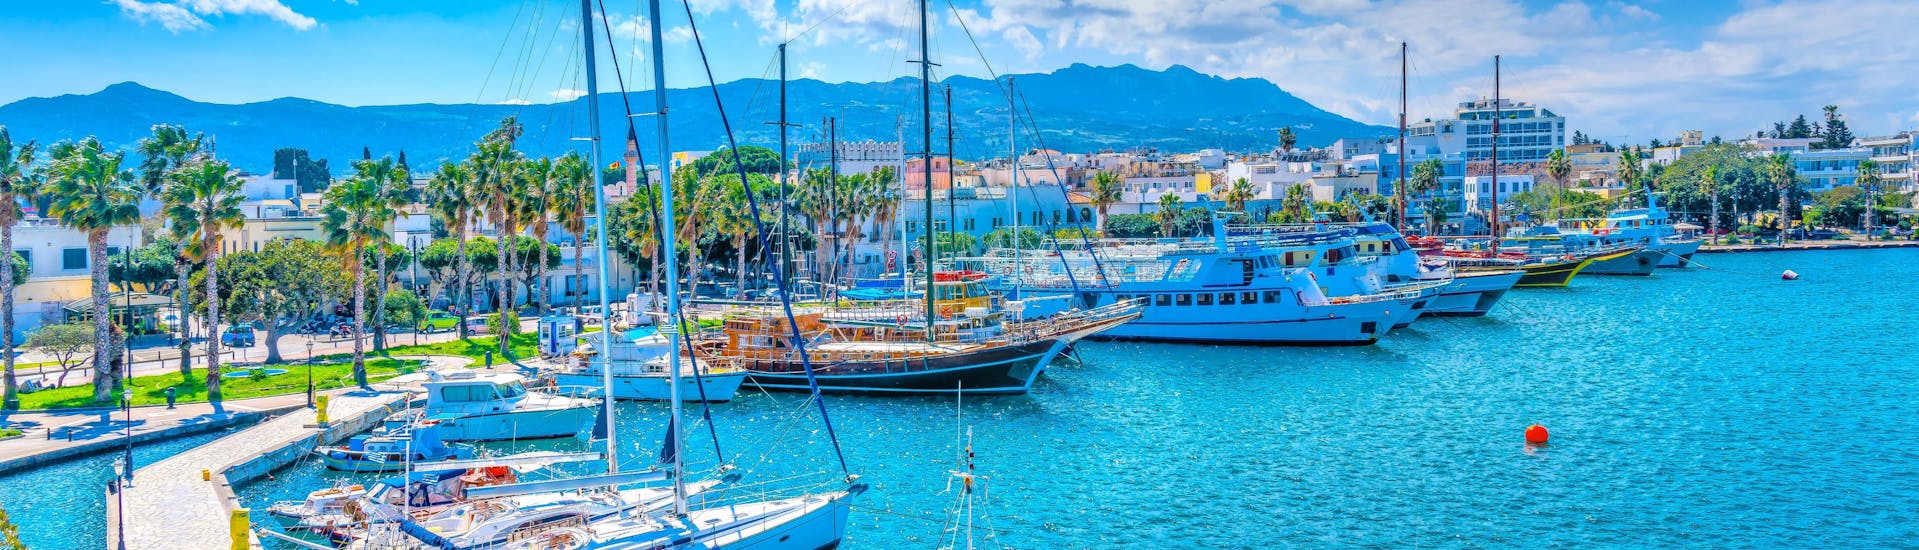 Photo du port de Kos, en Grèce, une destination populaire pour les voyages en bateau.